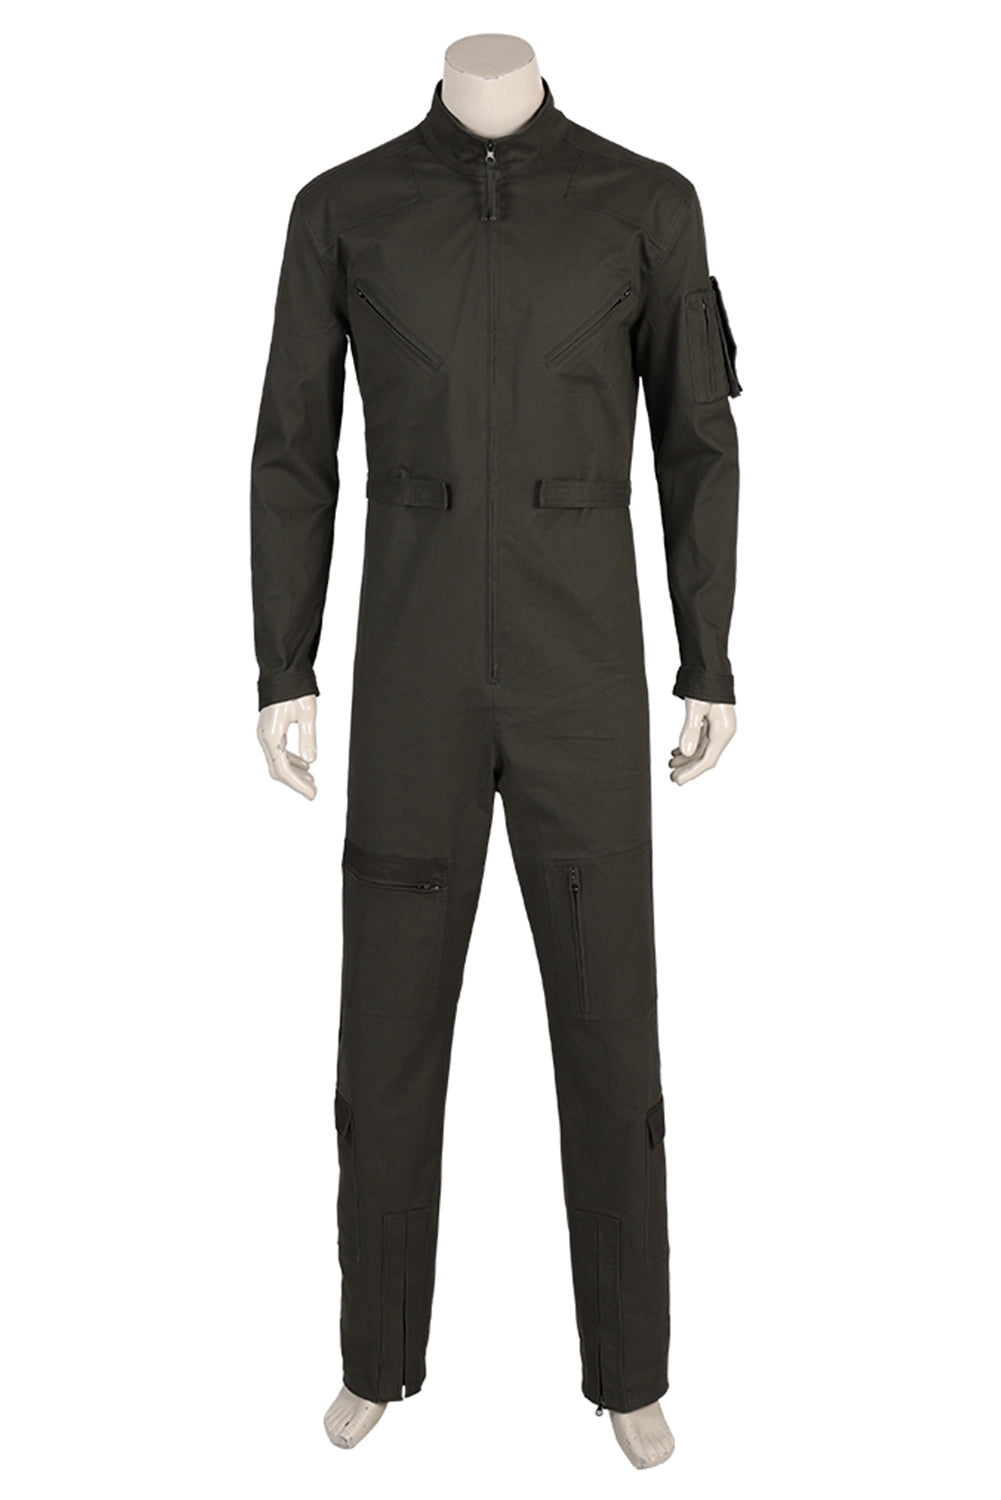 Top Gun 2 Maverick Tom Cruise Lt. Pete Maverick Mitchell Pilot Overall Jumpsuit Cosplay Kostüm